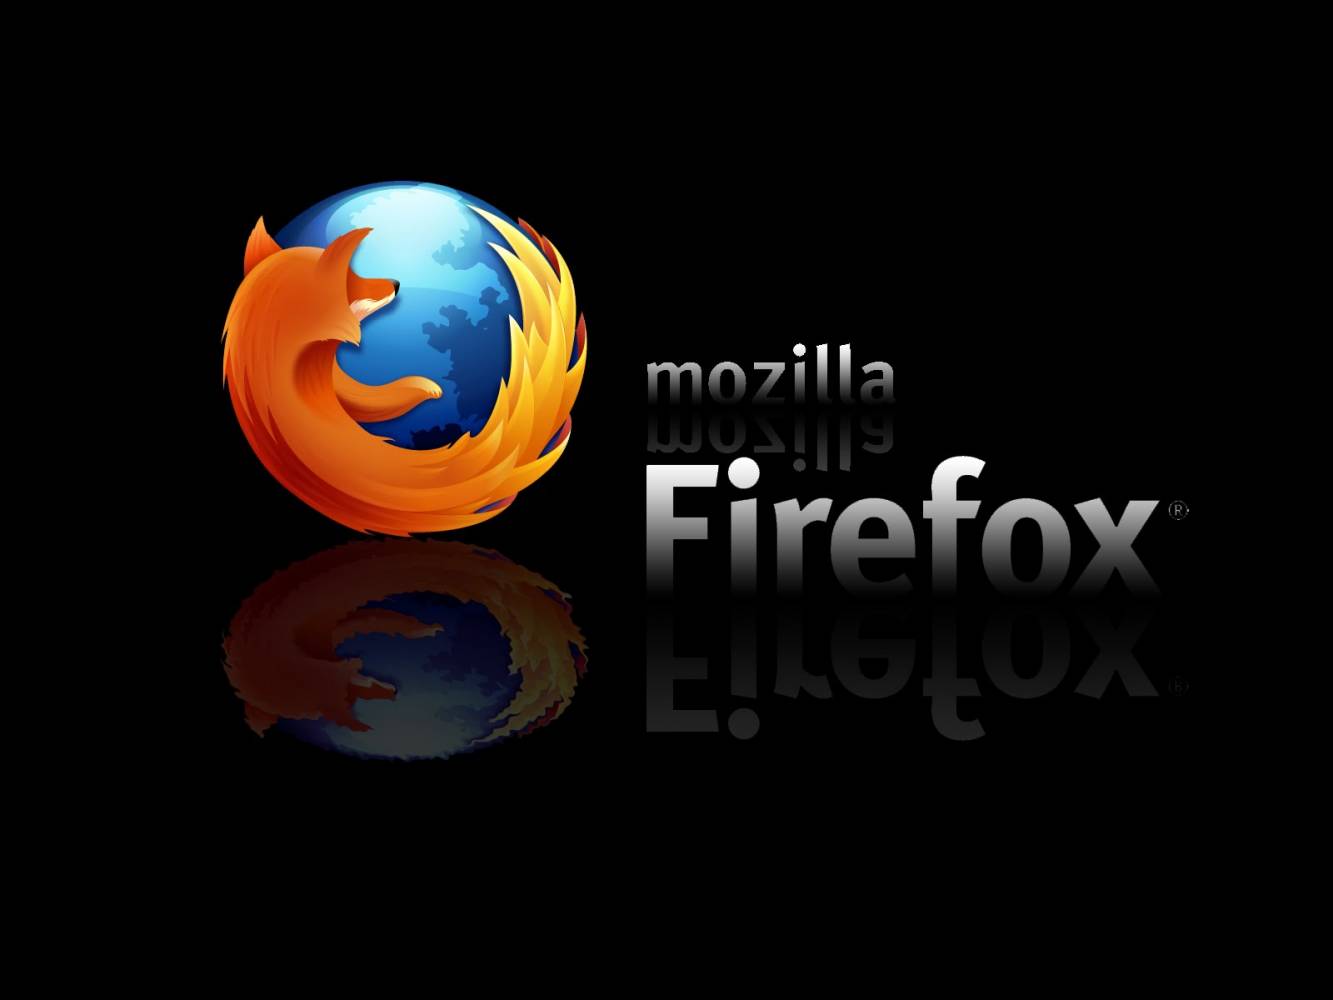 Firefox иска да превърне браузъра в геймърска платформа